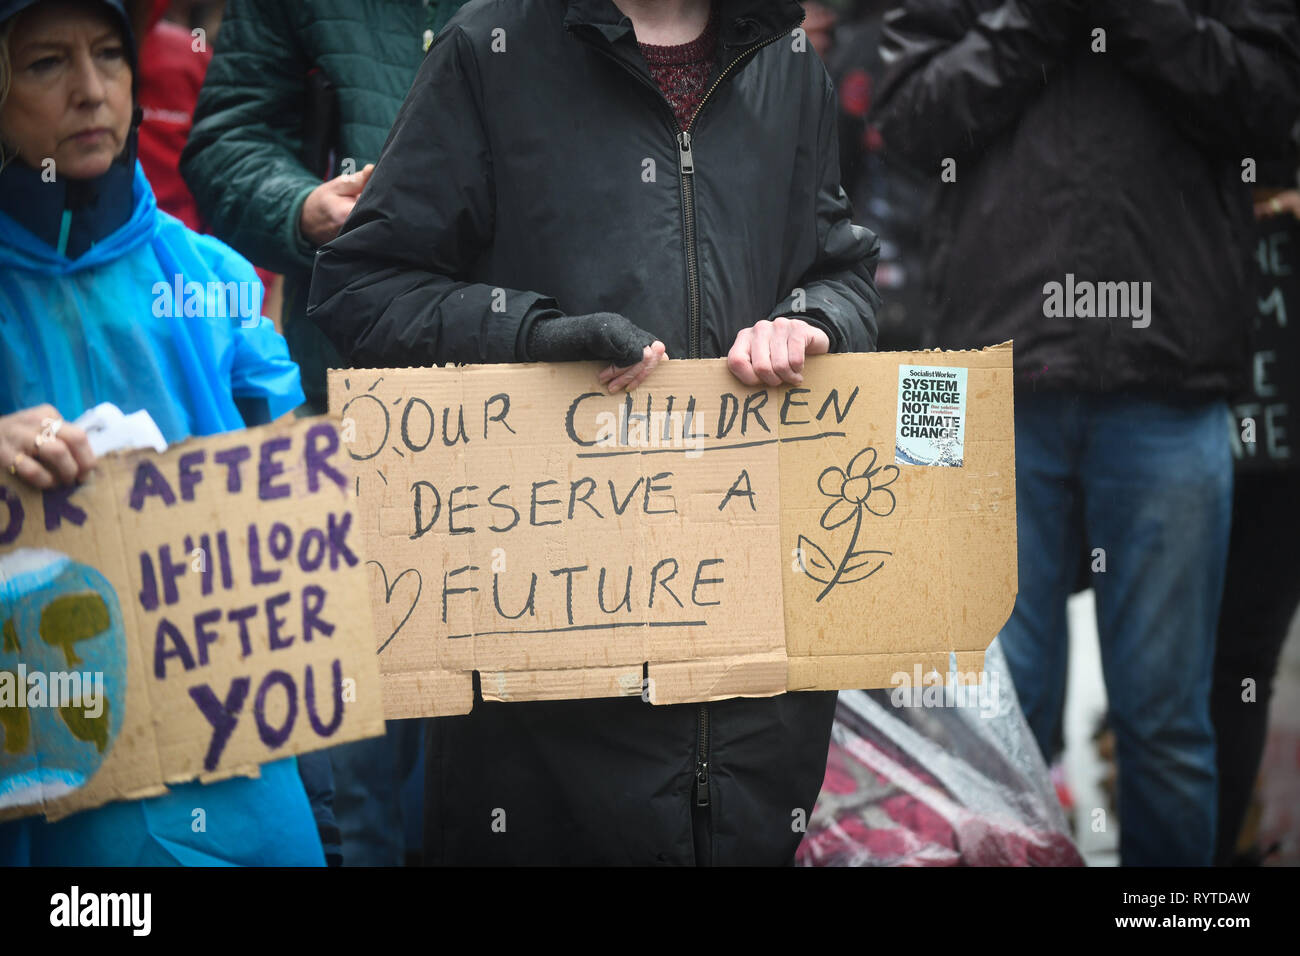 Swansea, Pays de Galles, Royaume-Uni. 15 mars 2019 sur la photo, les étudiants et les enfants dans la rue est de la ville de Swansea, dans le sud du Pays de Galles, Royaume-Uni, dans les dernières manifestations du changement climatique. Inspiré par 16 ans, militant de l'environnement Greta Thunberg, qui a accusé les dirigeants du monde de ne pas faire assez pour prévenir le changement climatique, les jeunes sont descendus dans la rue pour le Royaume-Uni et le monde d'essayer de mettre en évidence la cause d'une action positive en ce qui concerne le changement climatique. Robert Melen/Alamy Live News. Banque D'Images